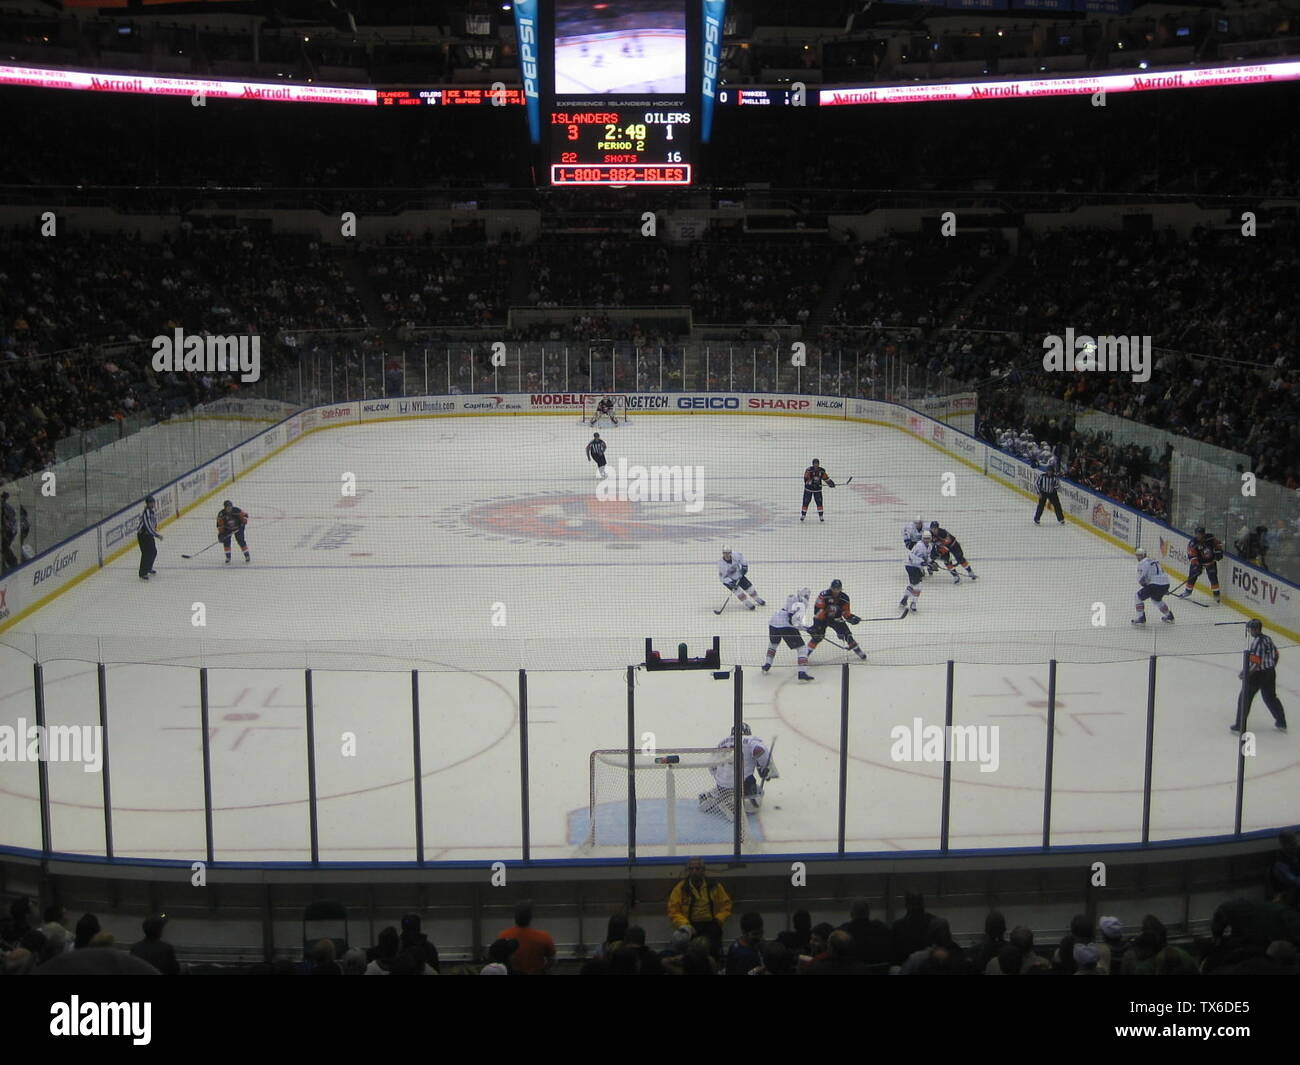 Vista completa della pista durante il gioco New York Islanders vs Edmonton Oilers il 2 novembre 2009.; 8 novembre 2009, 03:01 (UTC) 8 novembre 2009 (data di caricamento originale}.; i (iMatthew talk at) ha creato questo lavoro interamente da me.; iMatthew talk at; Foto Stock